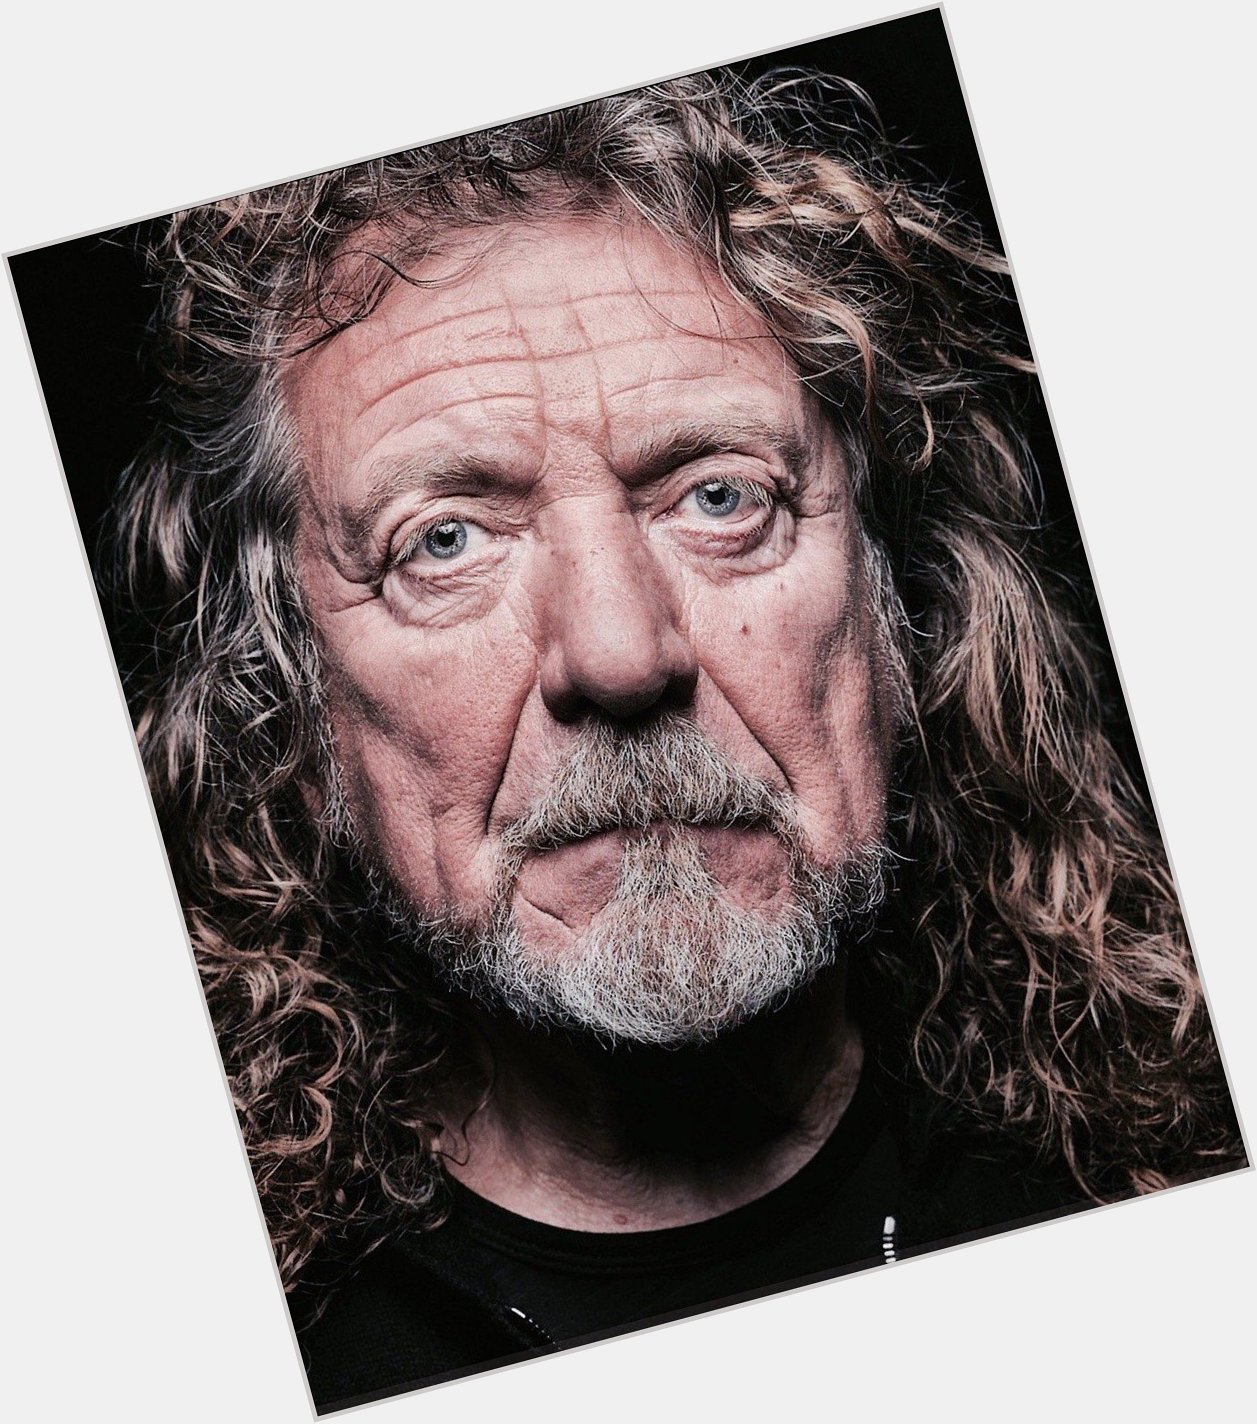  Happy birthday to Robert Plant!   